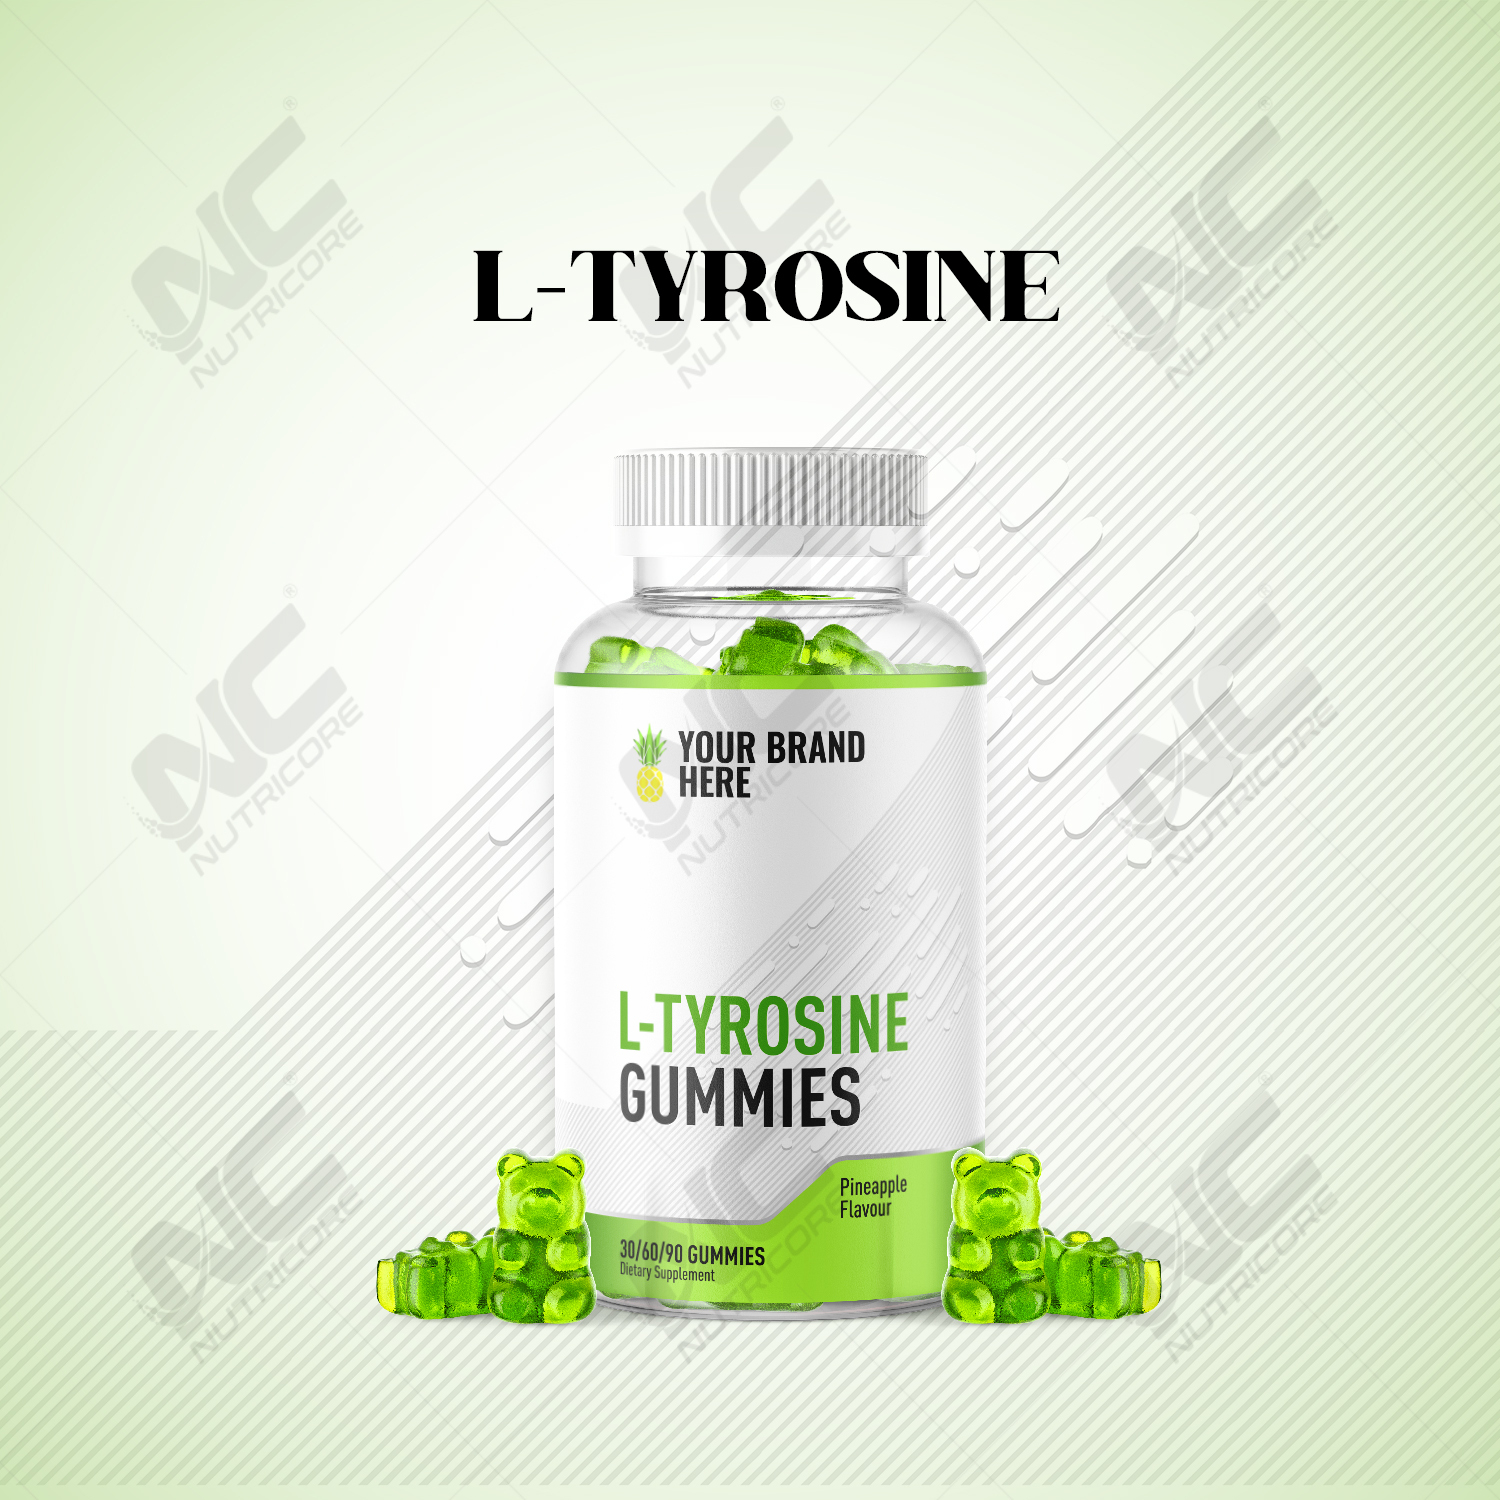 L-Tyrosine Gummies